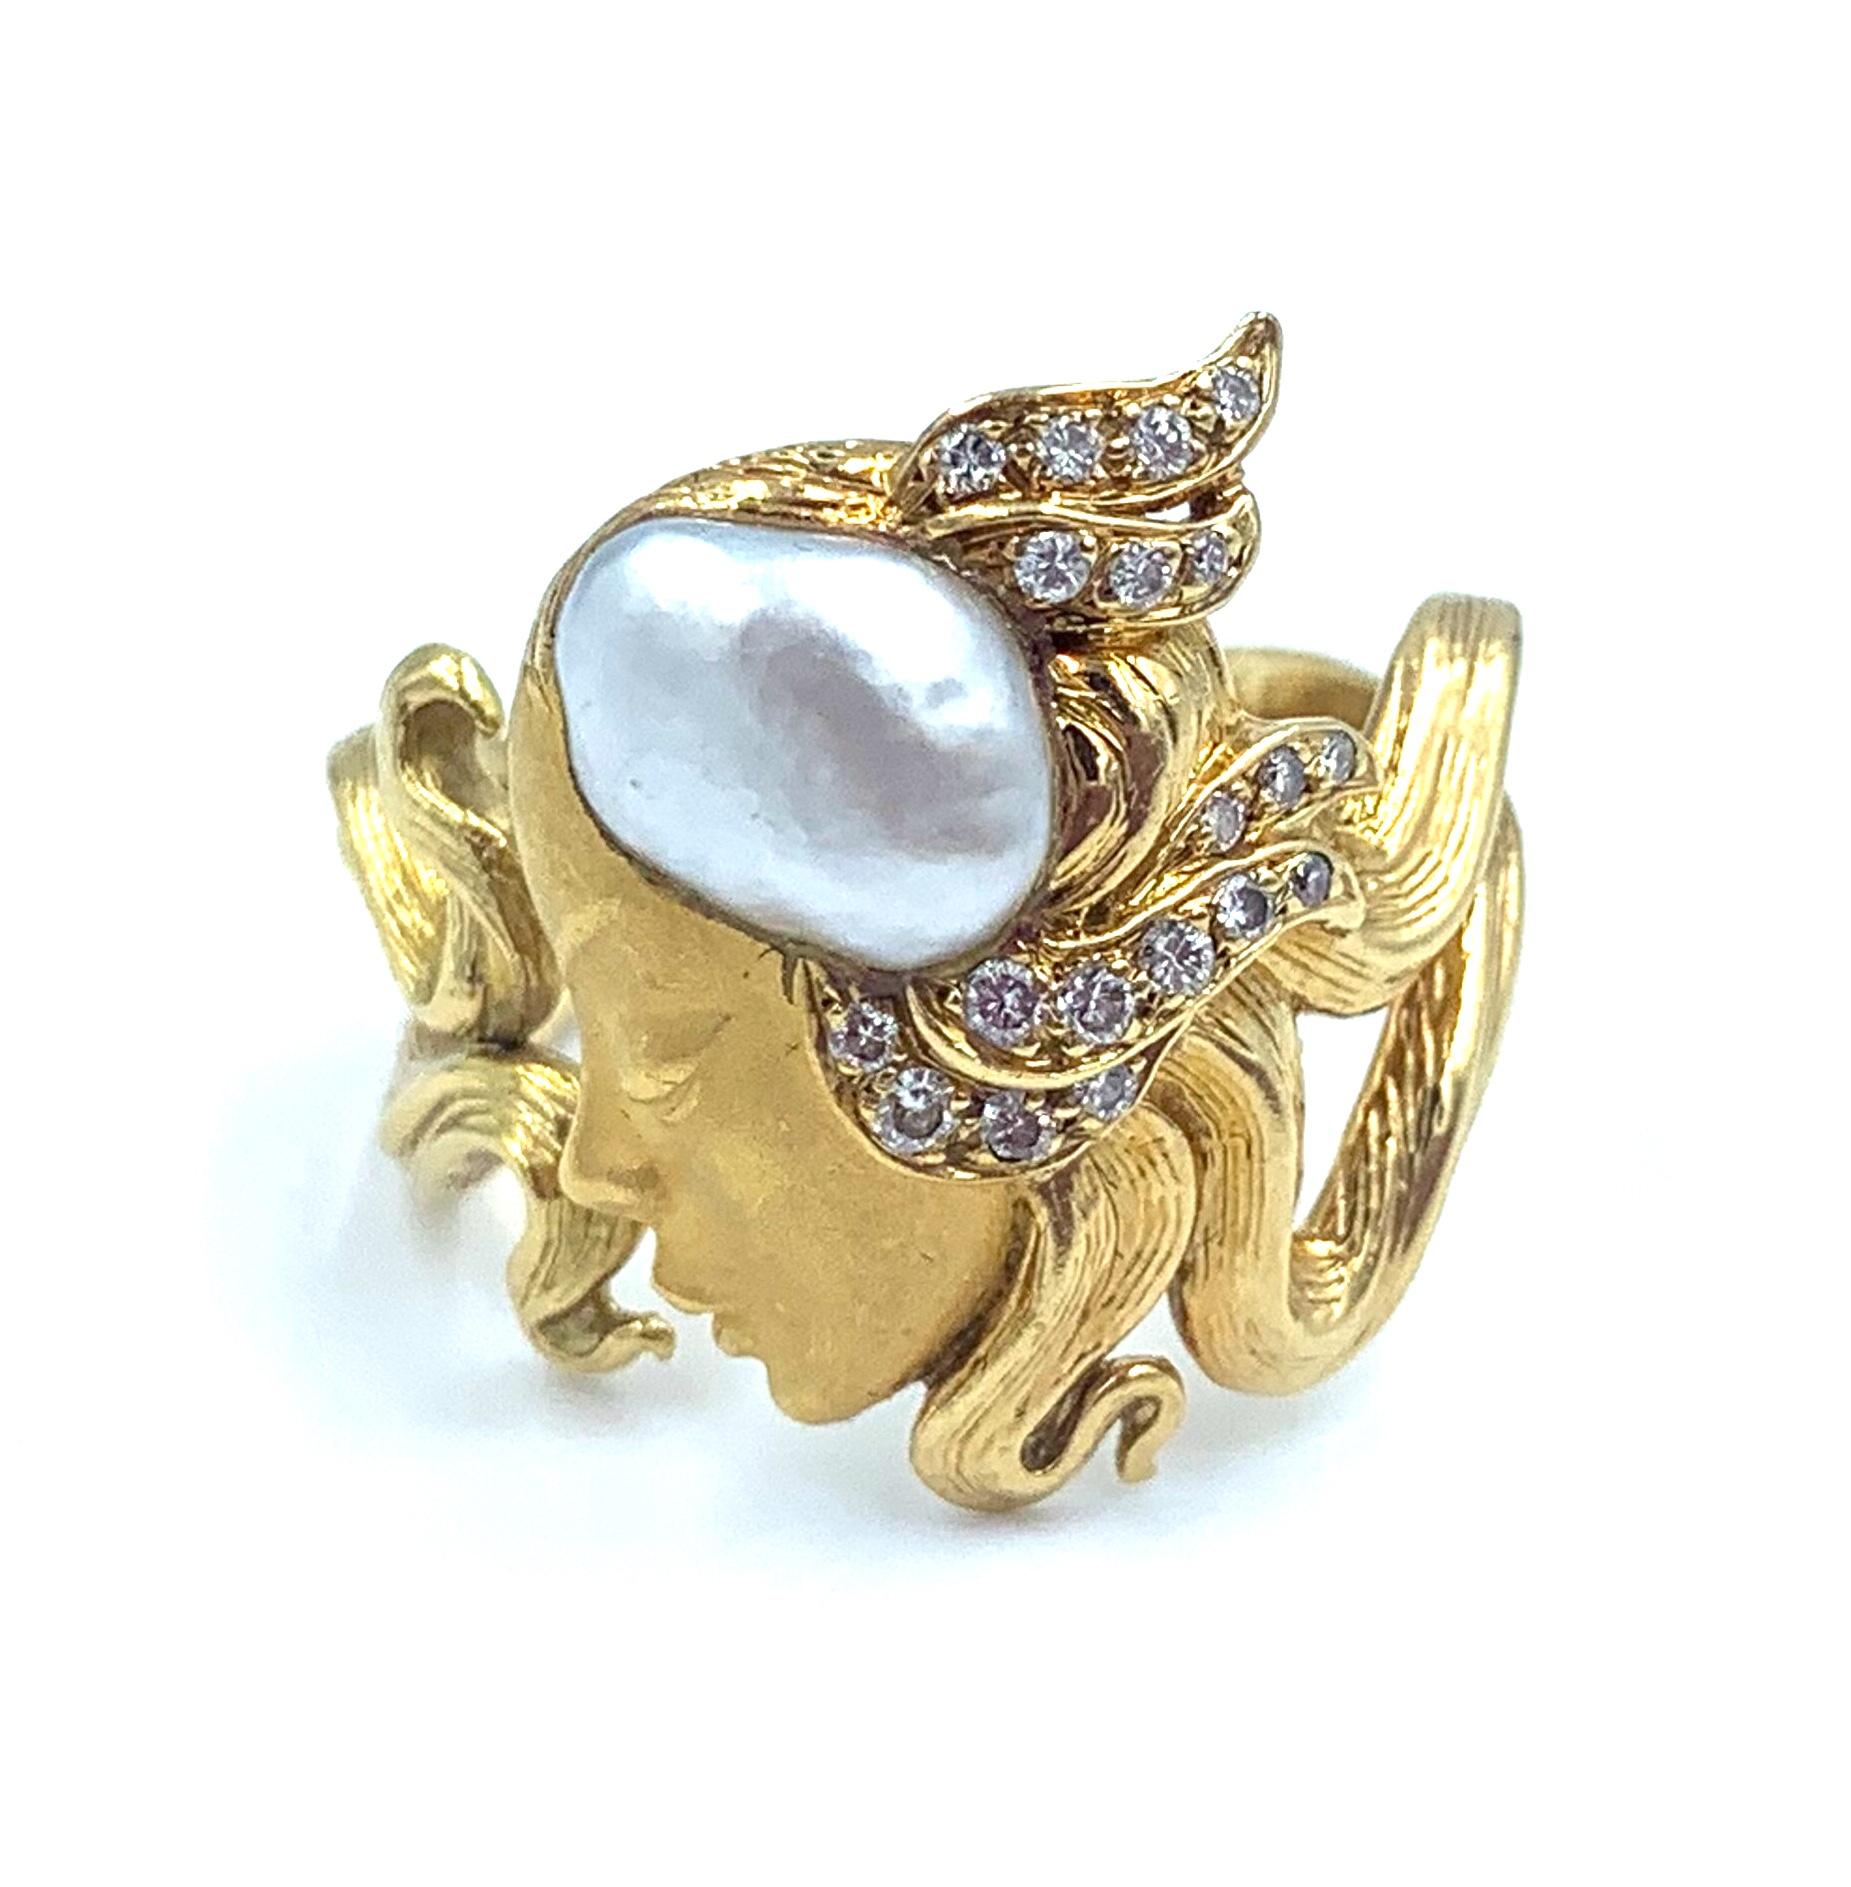 Wunderschöner Maidenform Ring aus 18 kt Gelbgold, verziert mit einer Perle und Diamanten des berühmten spanischen Schmuckhauses Carrera y Carrera.

Größe 8.5 
0.20cts von Diamanten 